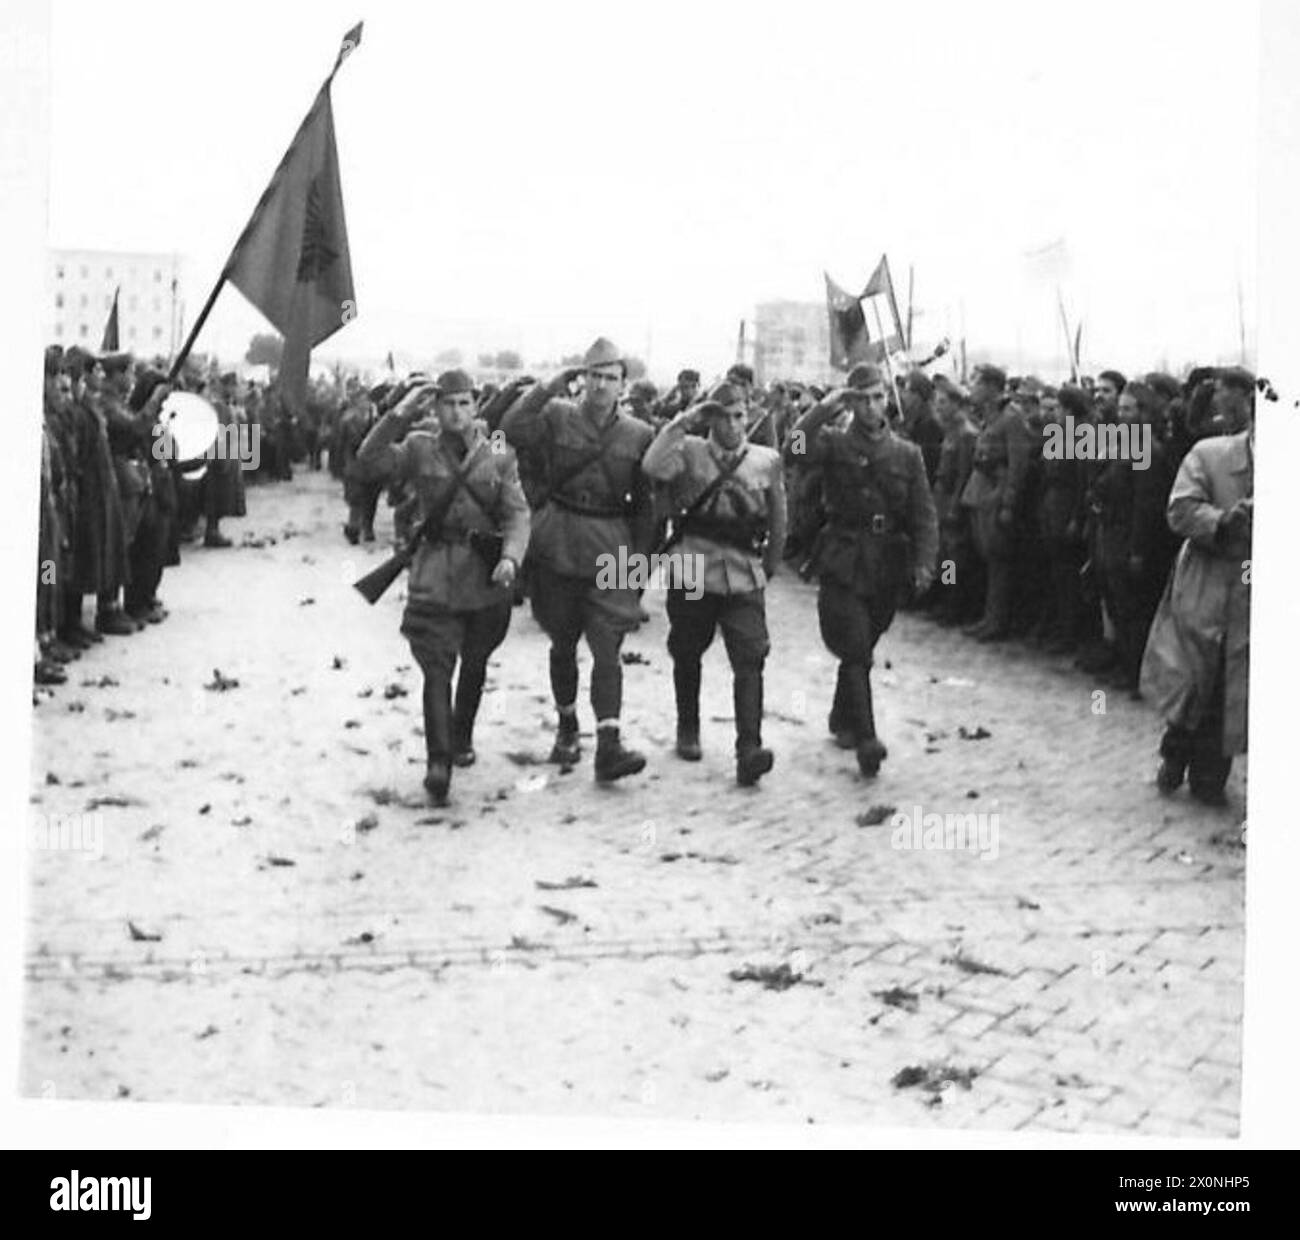 GIORNATA DELL'INDIPENDENZA IN ALBANIA - le truppe partigiane del 1° corpo marciano oltre la base salutista durante la parata del giorno dell'indipendenza a Tiana, la capitale dell'Albania. Negativo fotografico, British Army Foto Stock